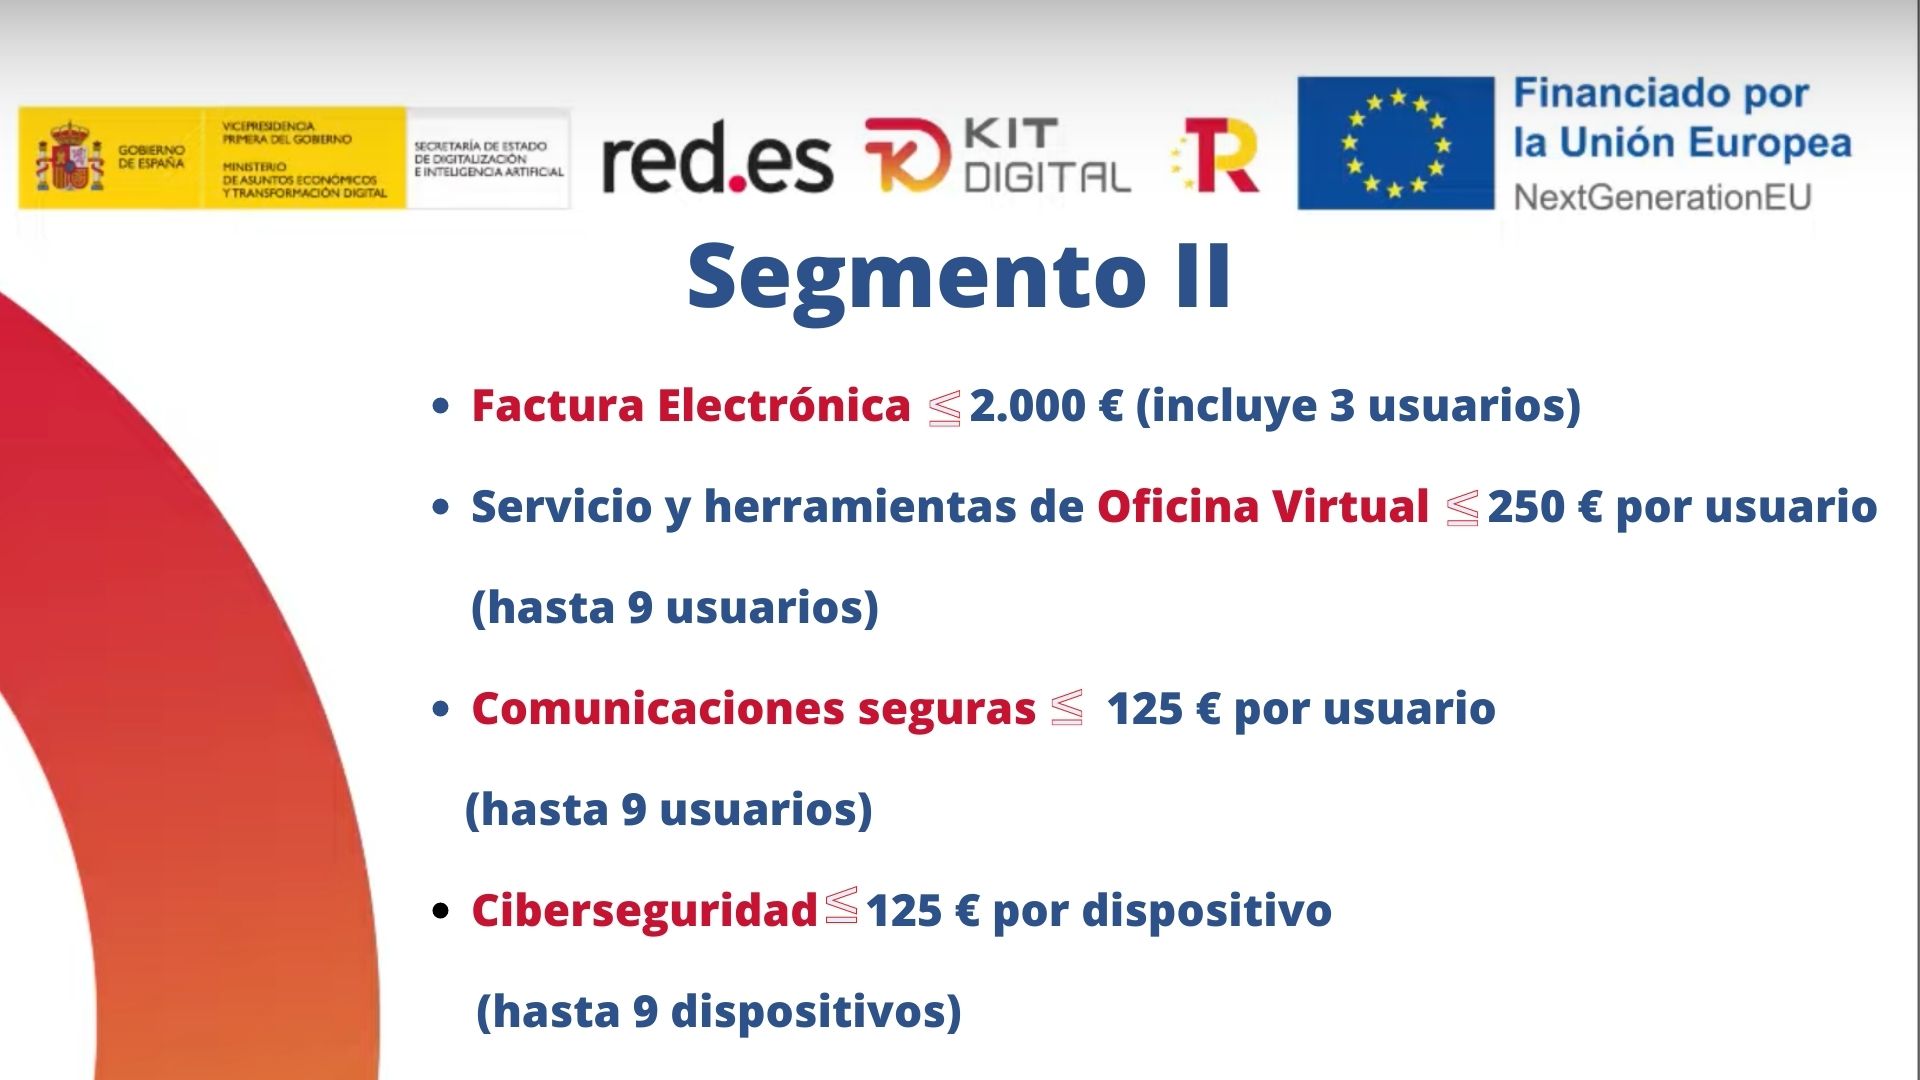 Categorias en digitalización | Programa de ayudas Kit Digital | empresas 3 menos 10 trabajadores | Oficina Acelera Pyme | Cámara de Comercio de Murcia